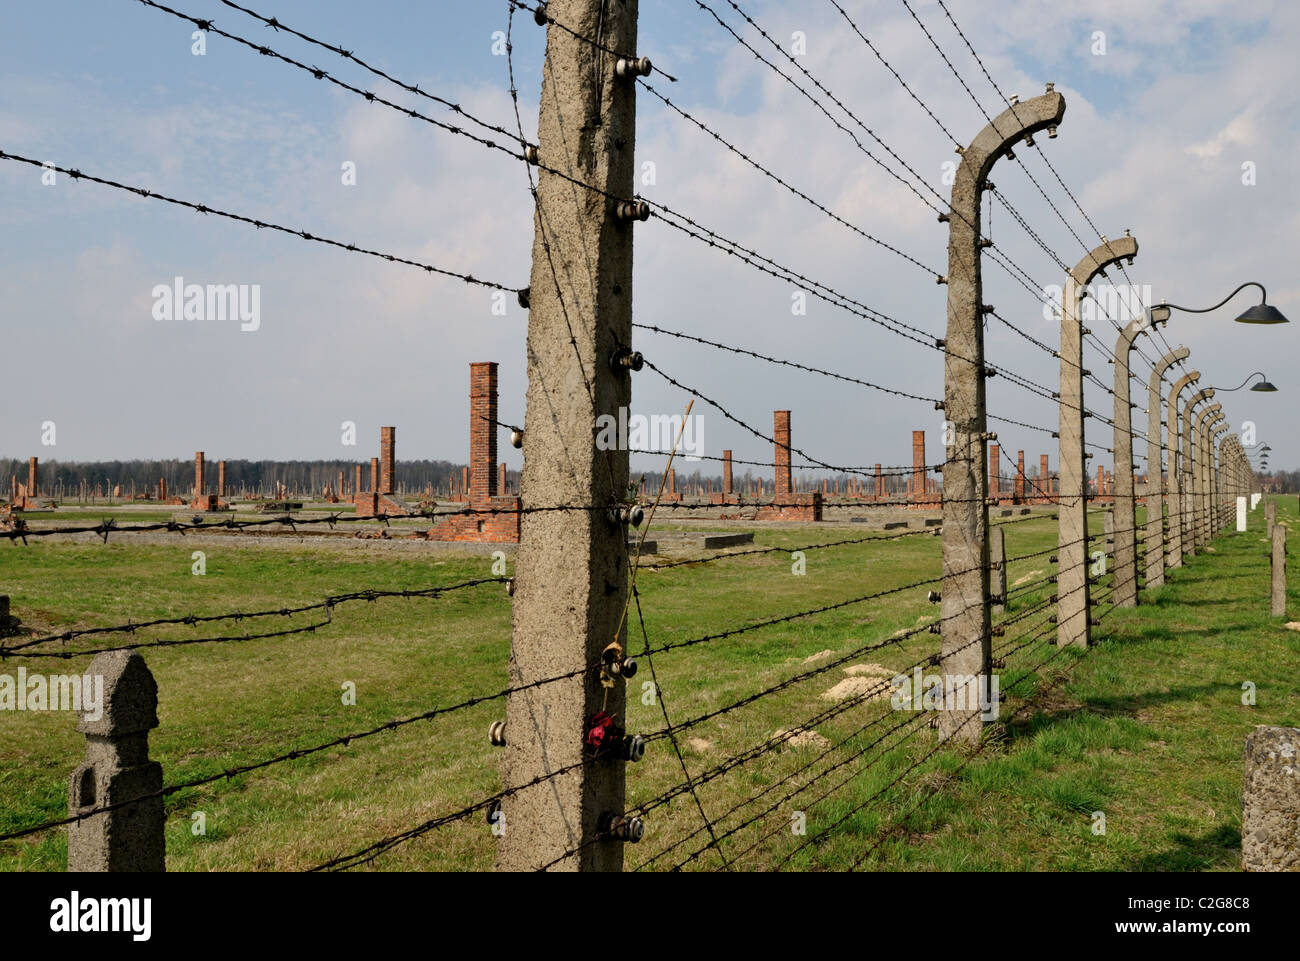 Filo spinato - recinti elettrici dividendo le diverse sezioni del campo di concentramento di Oswiecim - Brzezinka -Auschwitz - Birkenau Foto Stock